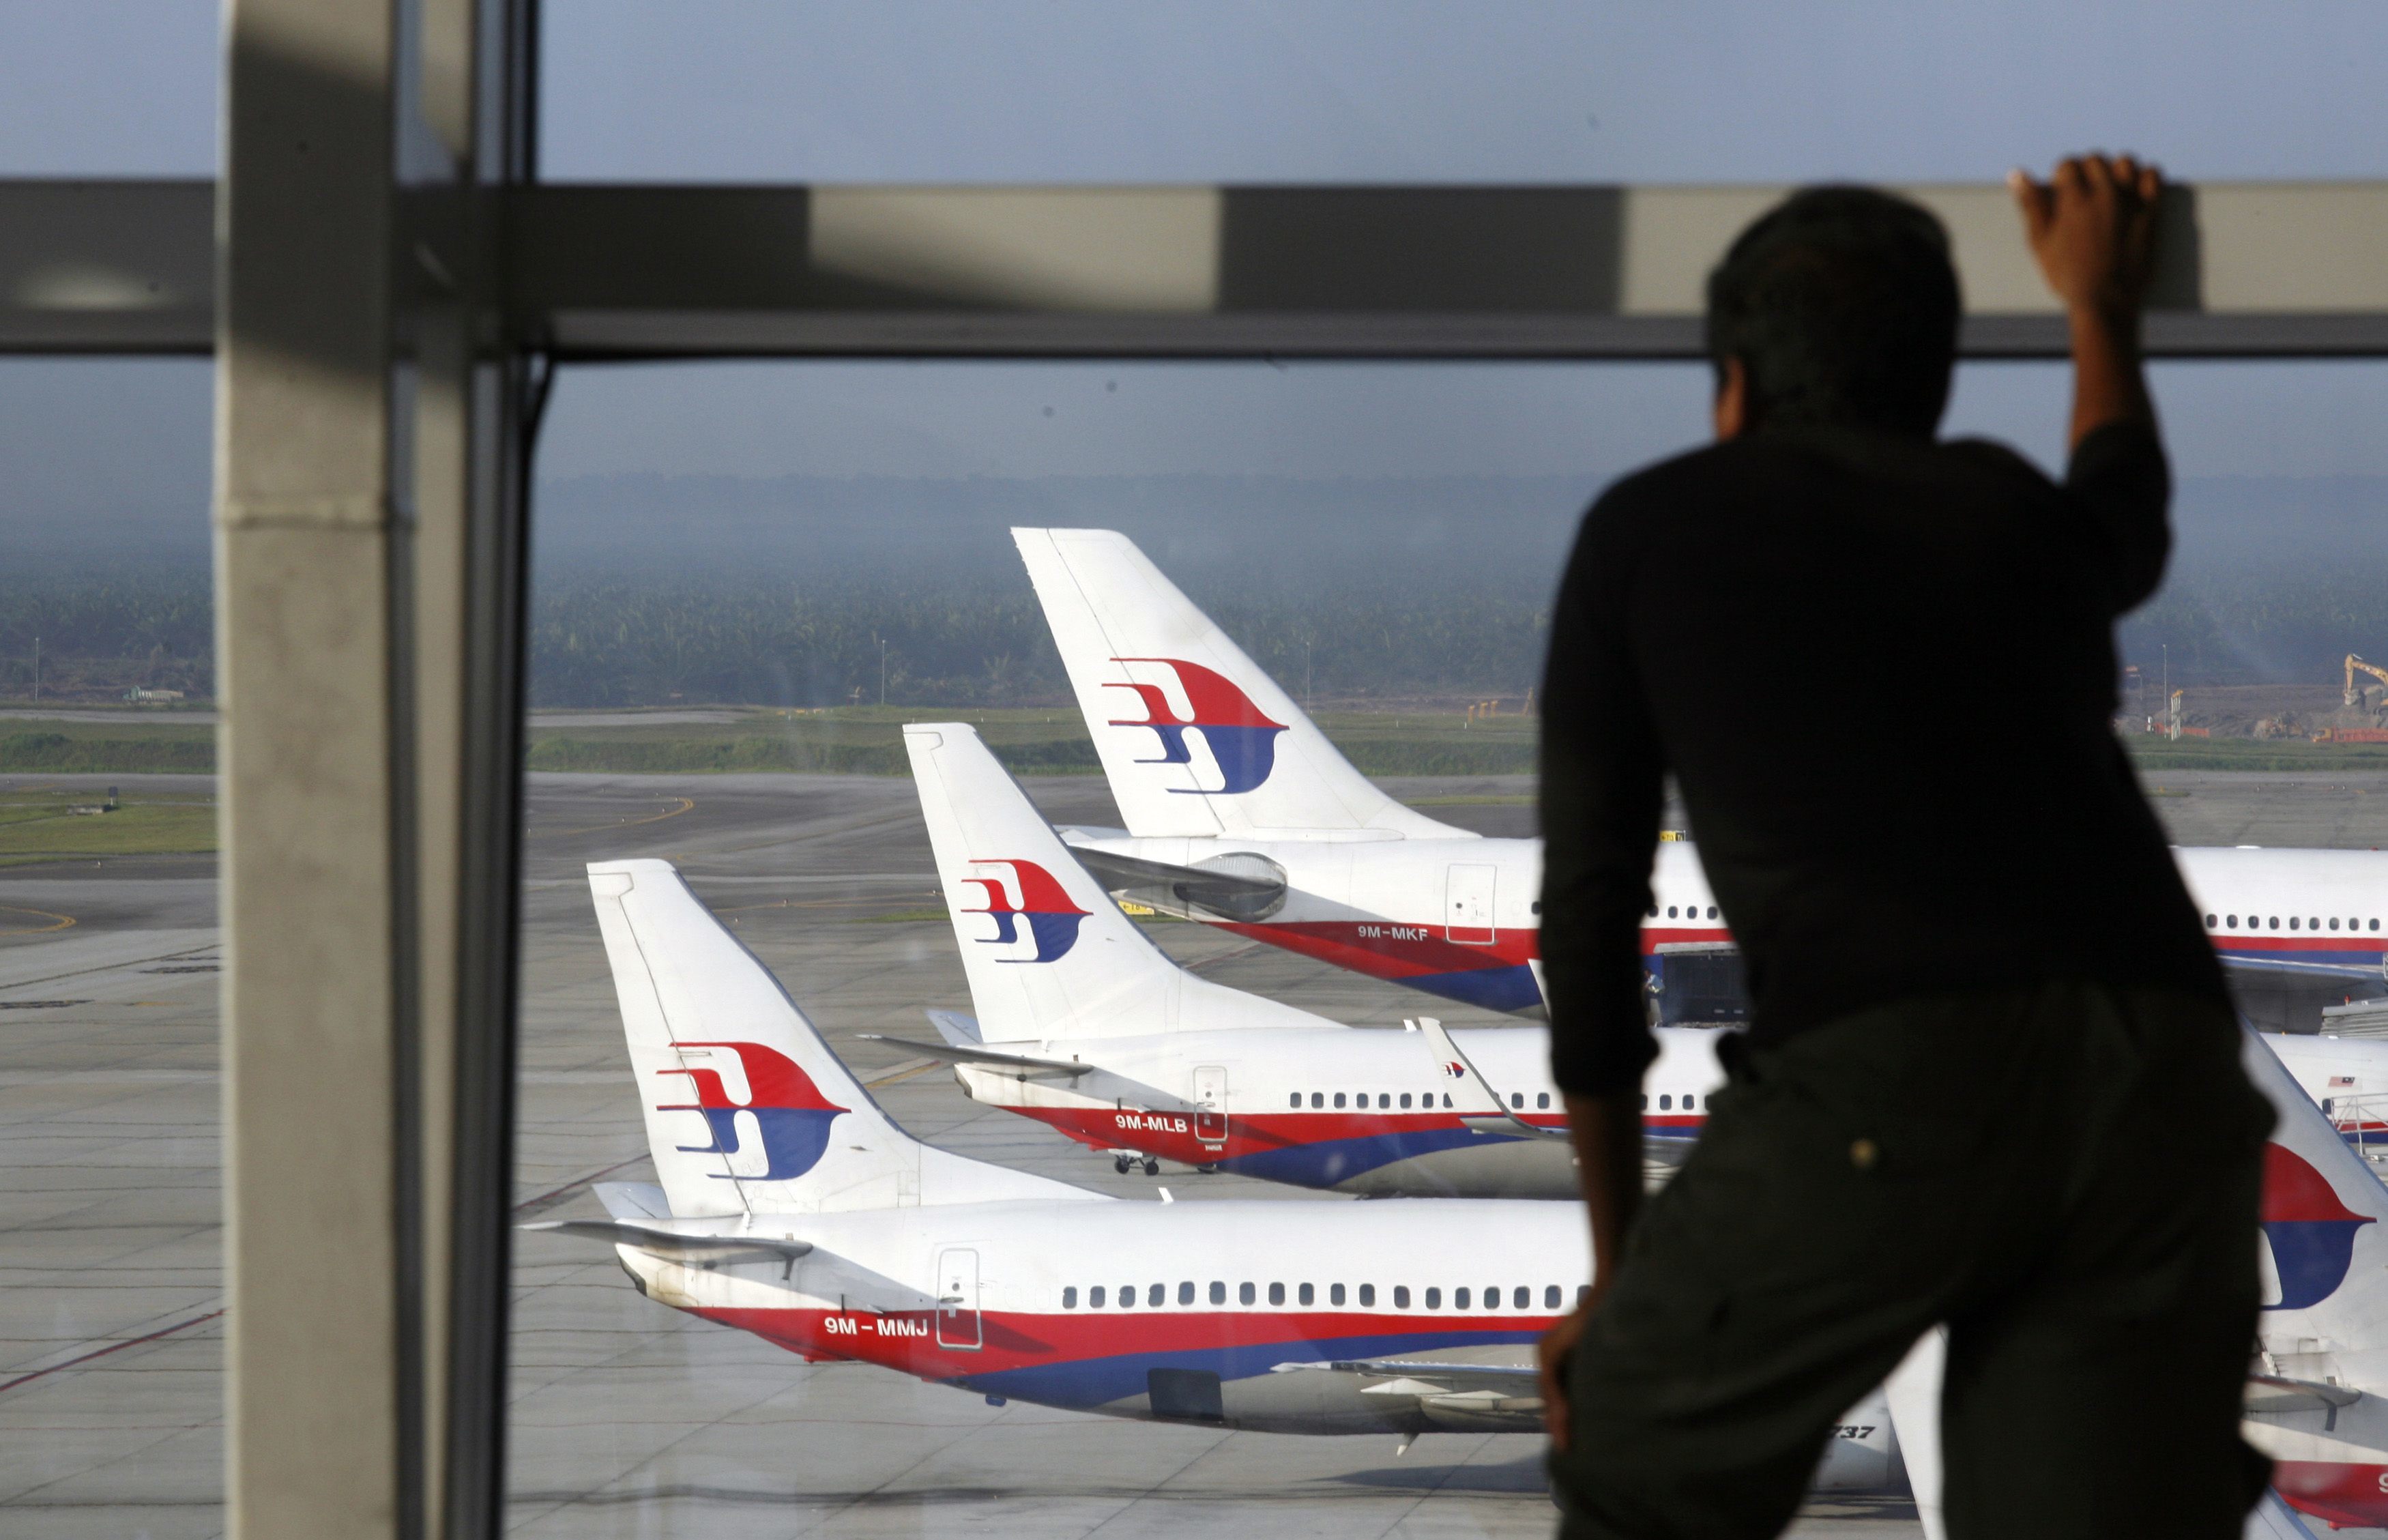 Αεροσυνοδός της Malaysia Airlines κατηγορείται για σεξουαλική παρενόχληση